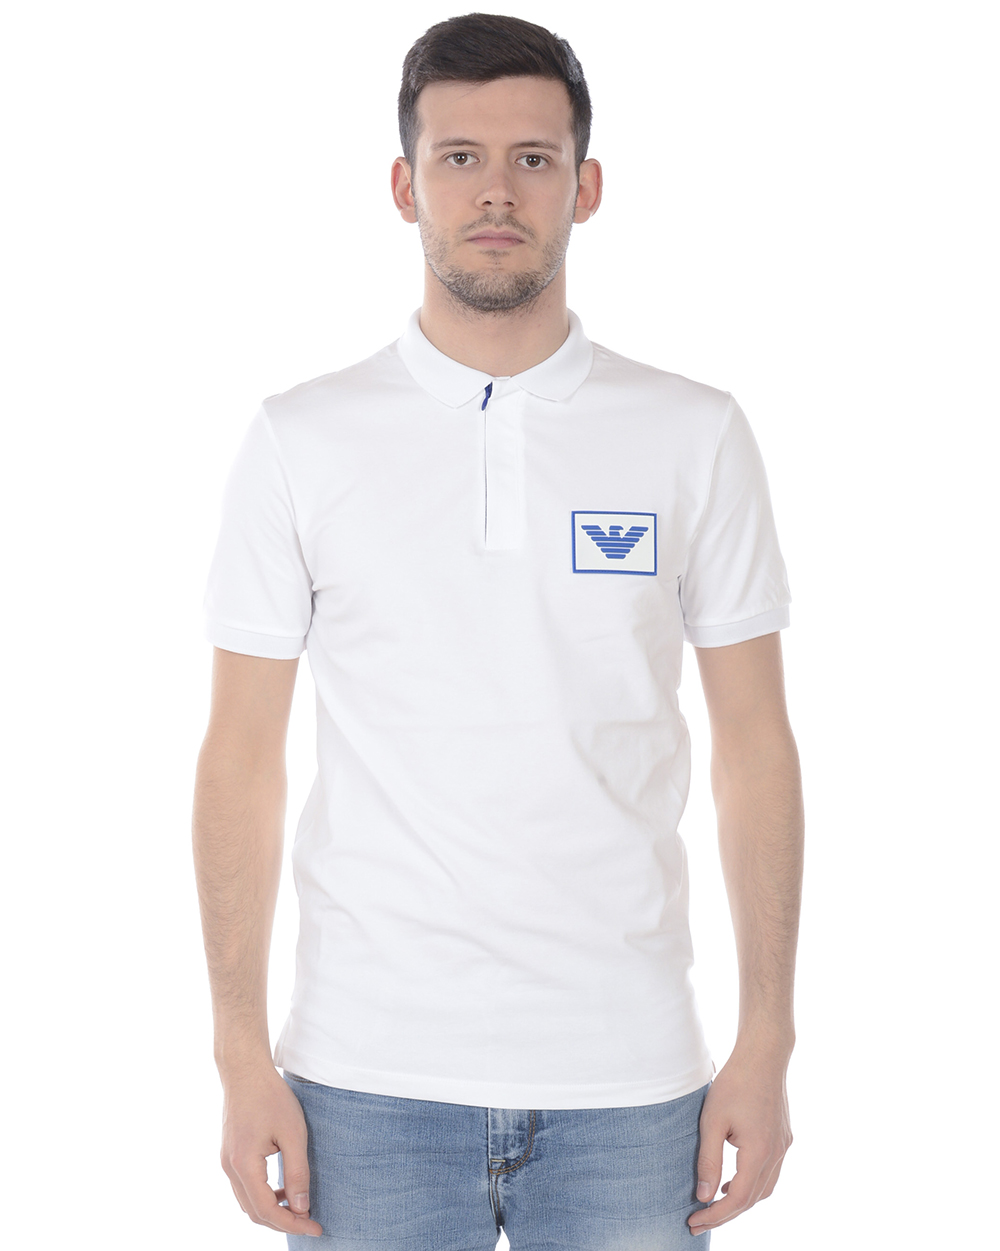 Emporio Armani Polo Shirt Cotton Man White 3H1F90 1J37Z 100 Sz. S MAKE OFFER